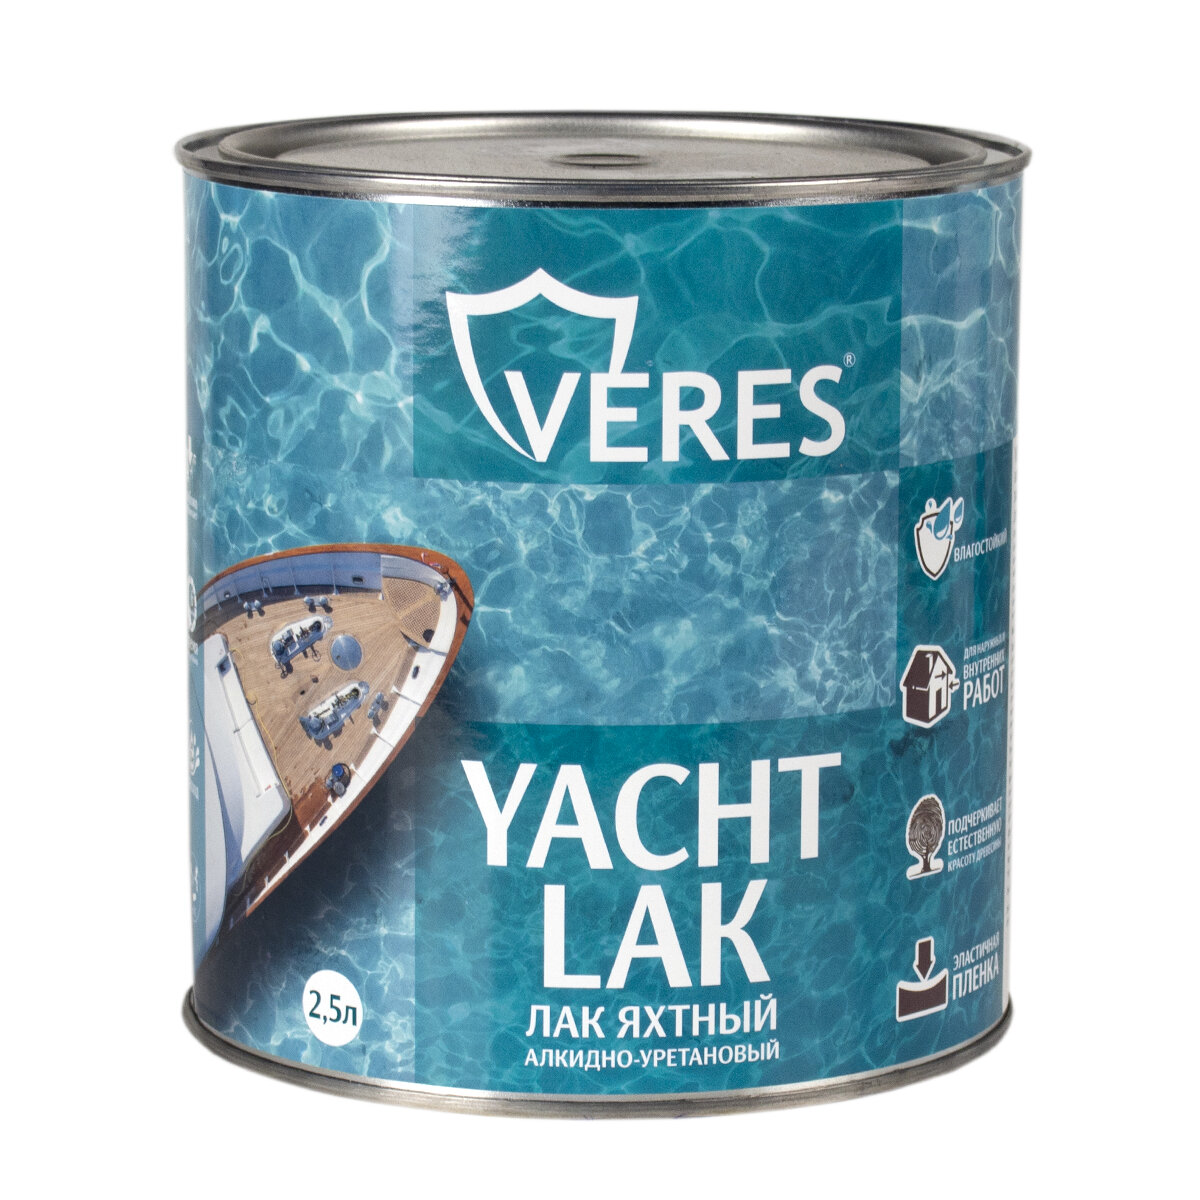 Лак яхтный Veres, алкидно-уретановый, матовый, 2,5 л